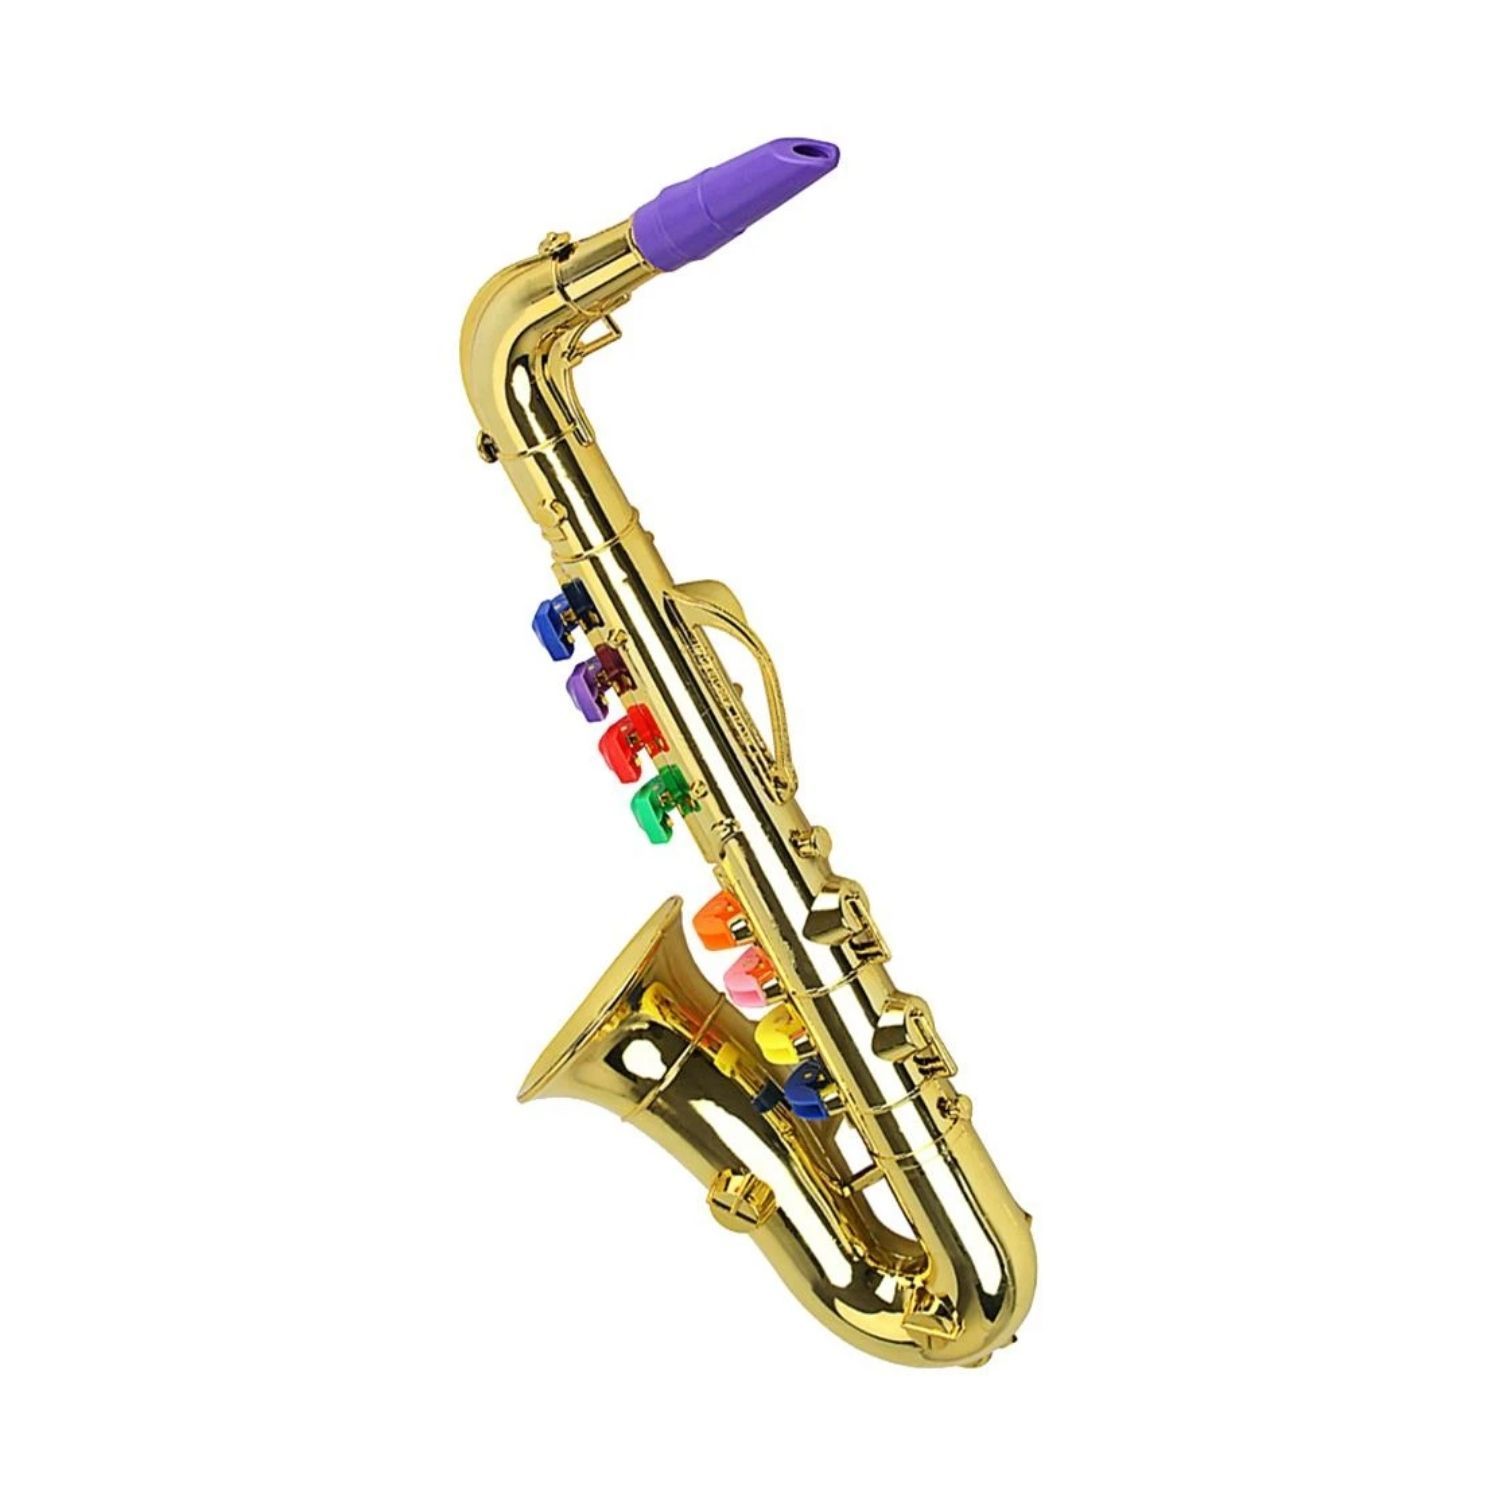 Saxofon De Juguete Rosado - Outlet Seigard Chile S.A.